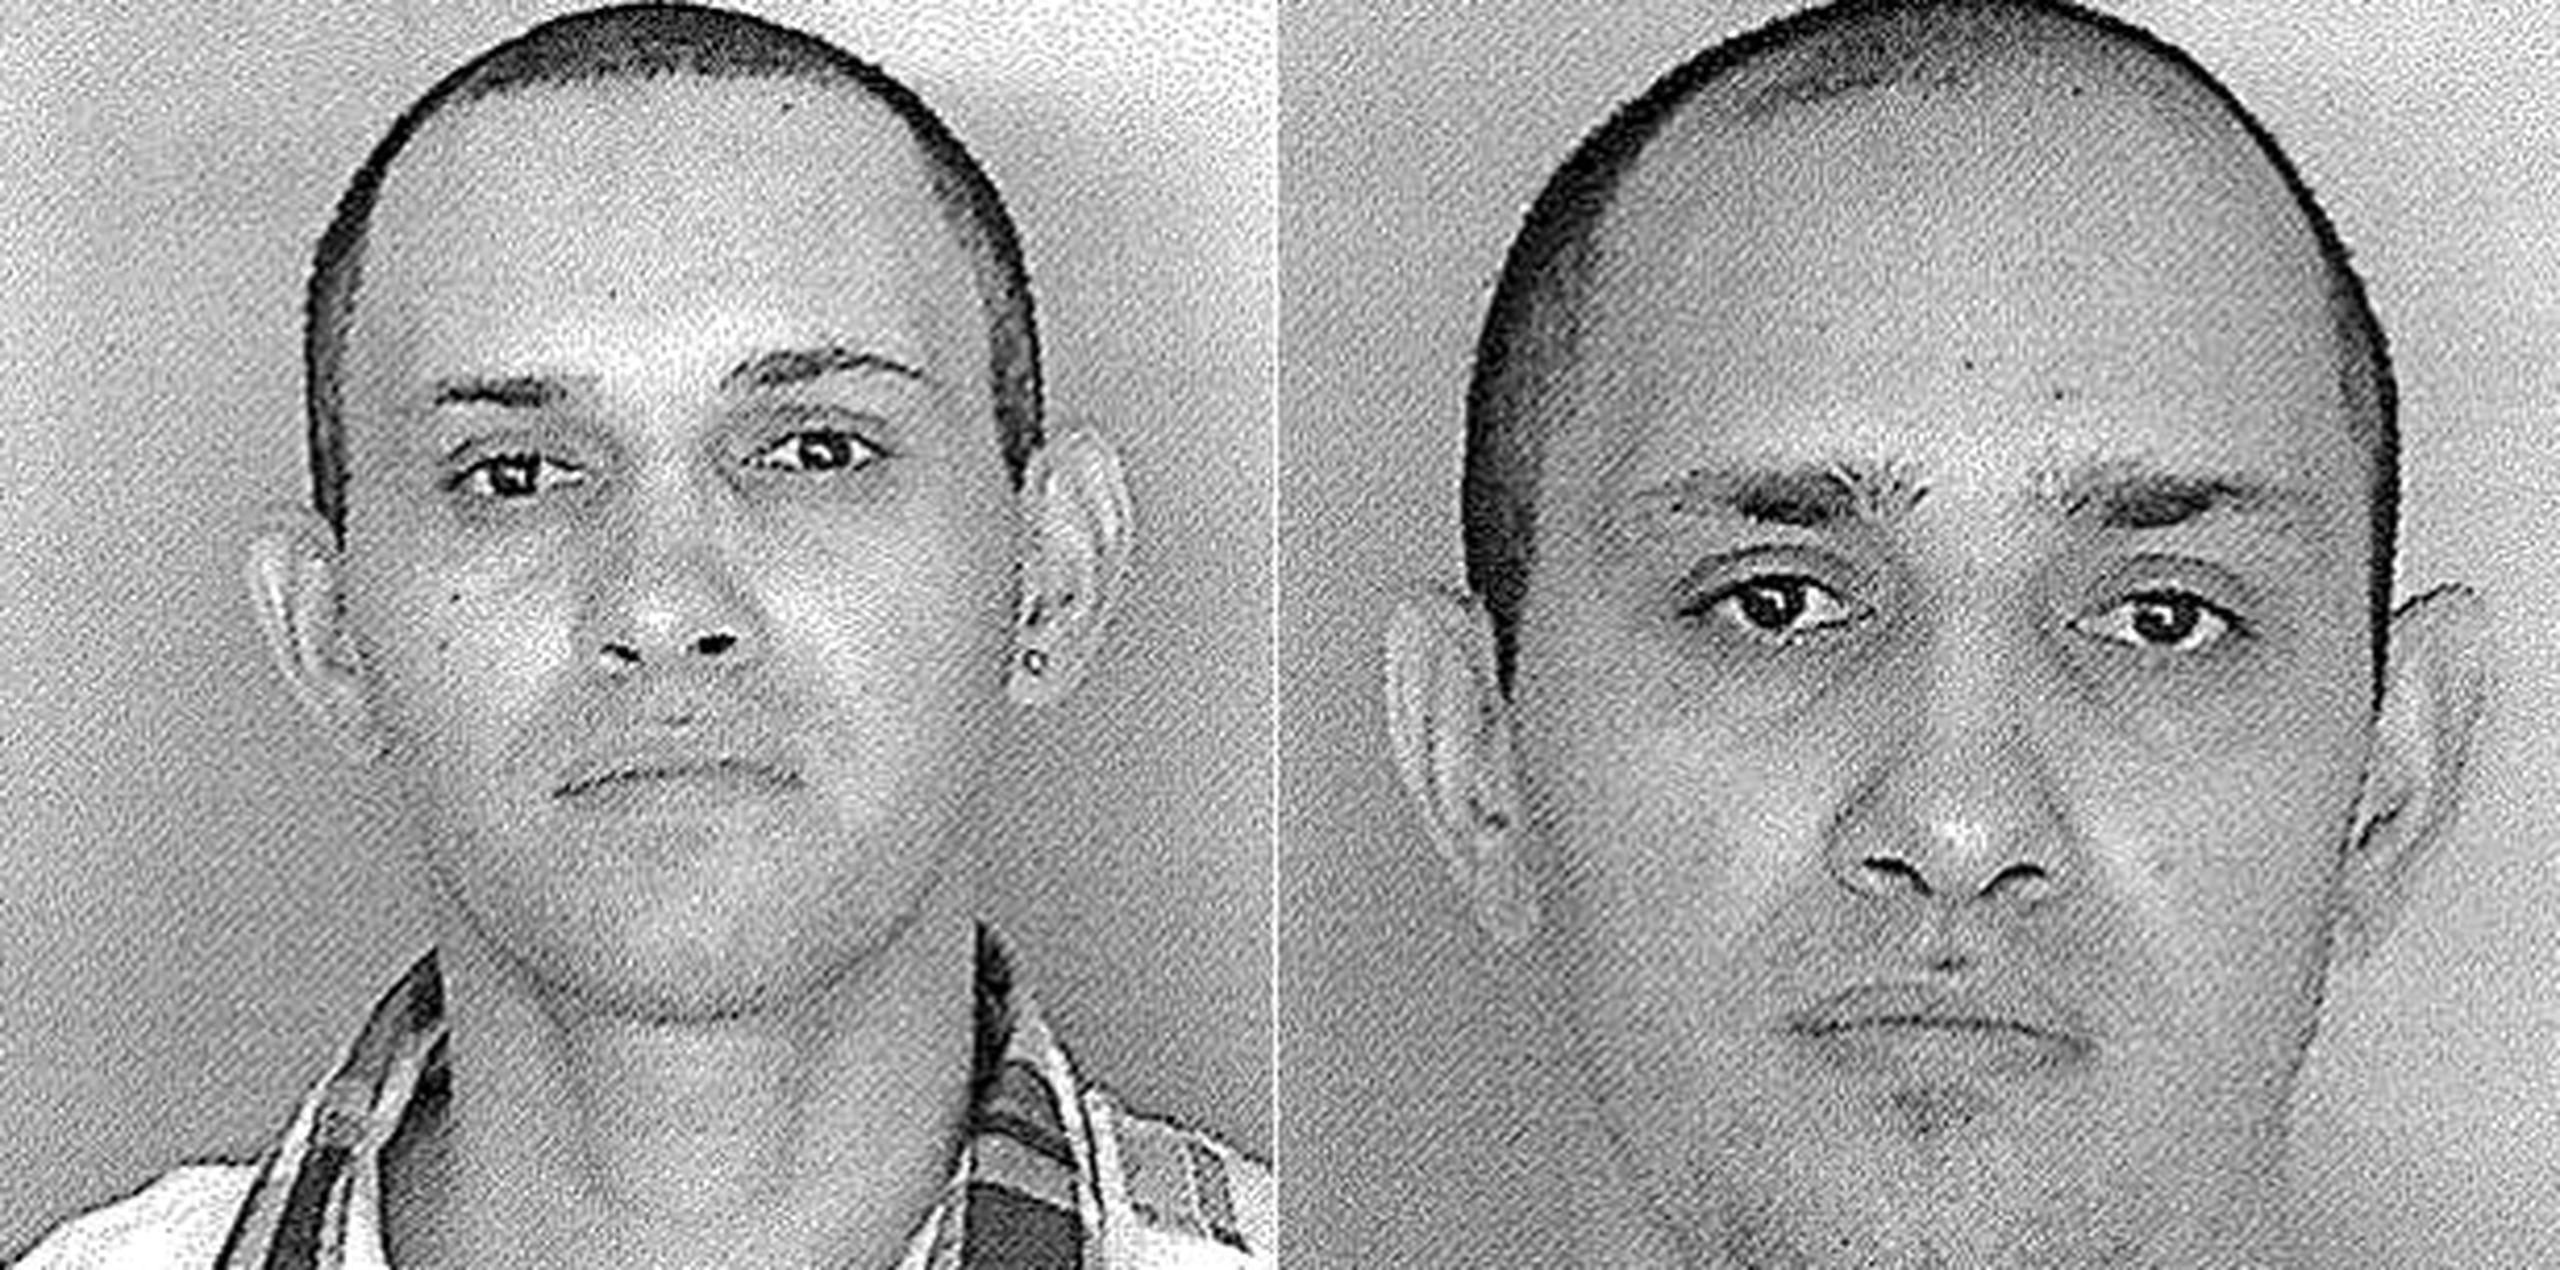 Miguel A. Jiménez Soto y su hermano Angel, ambos de 35 años, serán ingresados esta noche en la cárcel Guerrero, de Aguadilla. (Suministradas)